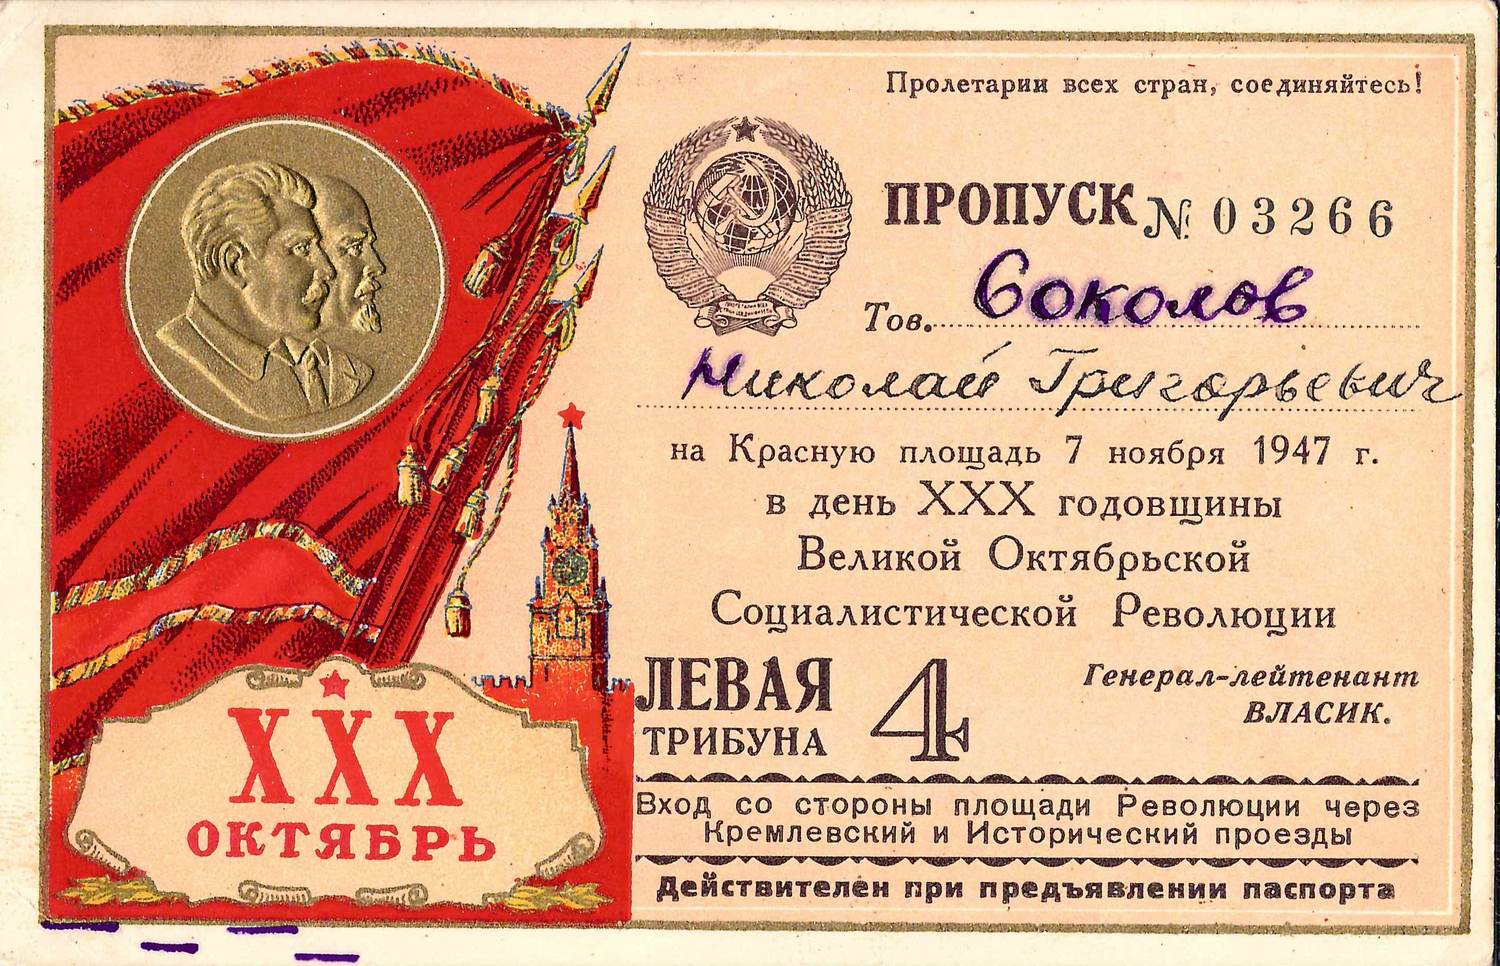 Пропуск на Красную площадь в день годовщины Великой Октябрьской социалистической революции 7 ноября 1947 года на имя Николая Григорьевича Соколова.